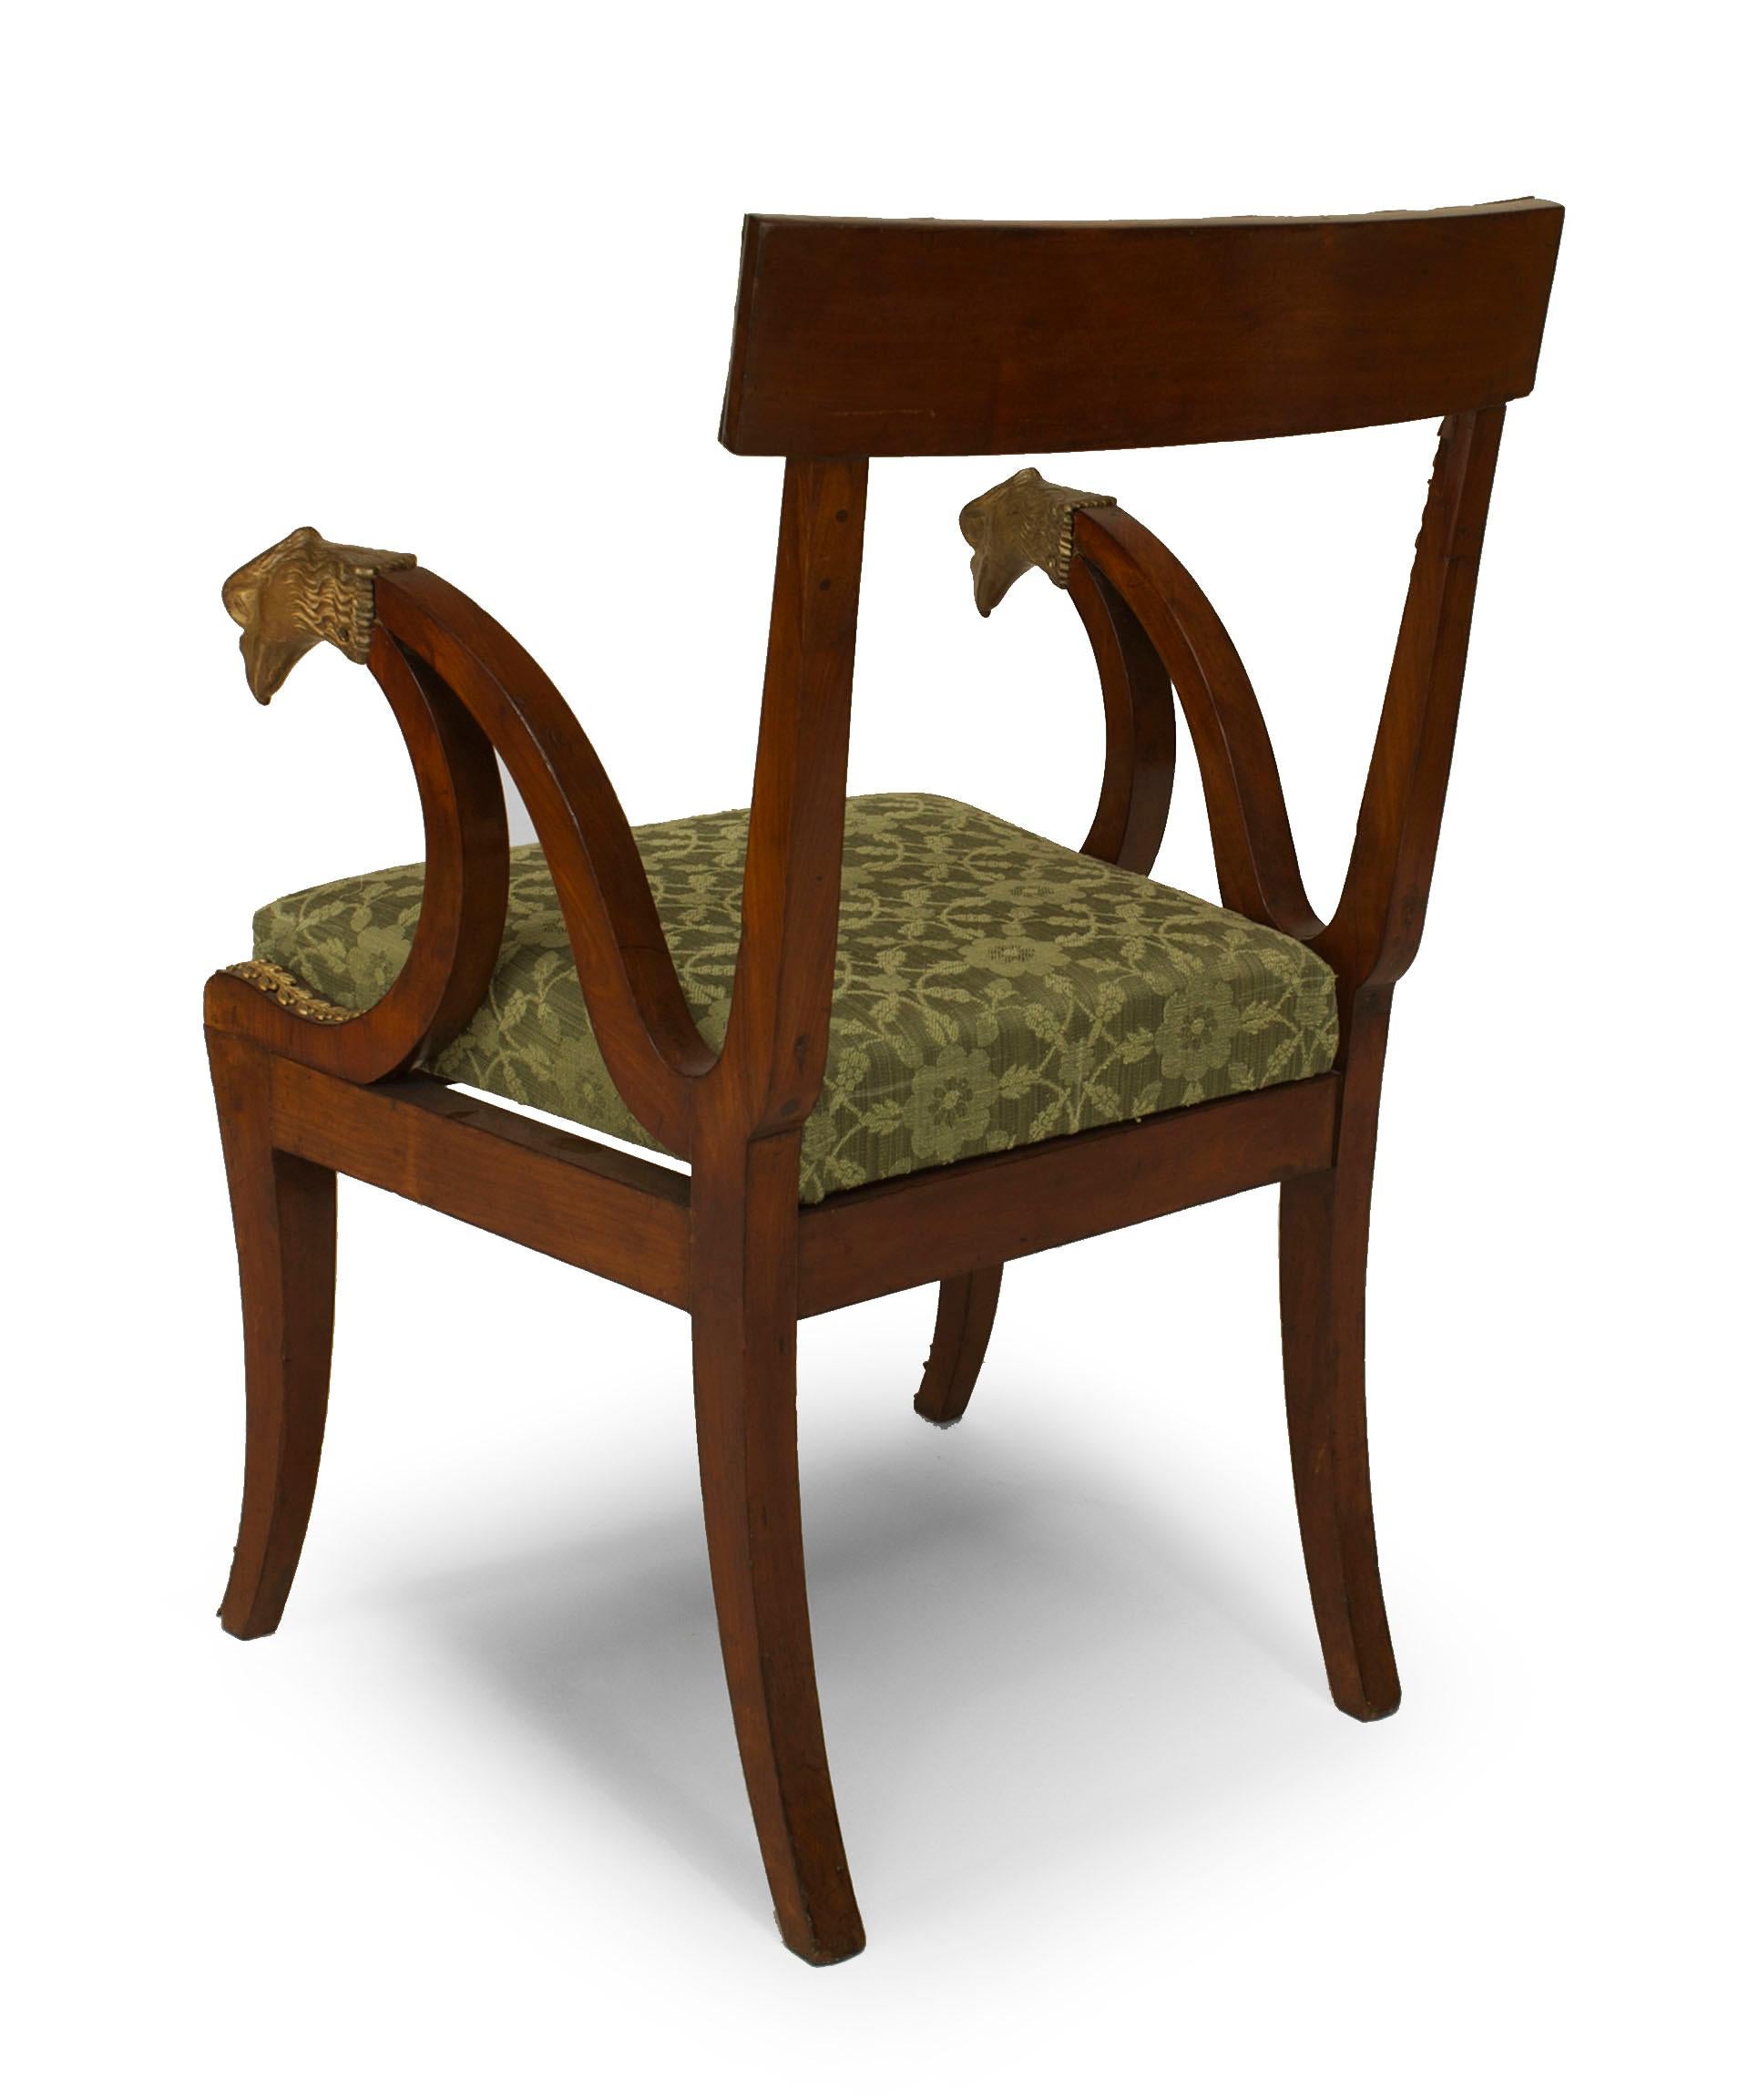 Ein Paar Mahagoni-Sessel im französischen Empire-Stil (19. Jahrhundert) mit Bronzeverzierung und Adlerköpfen mit grünem Sitz.
 